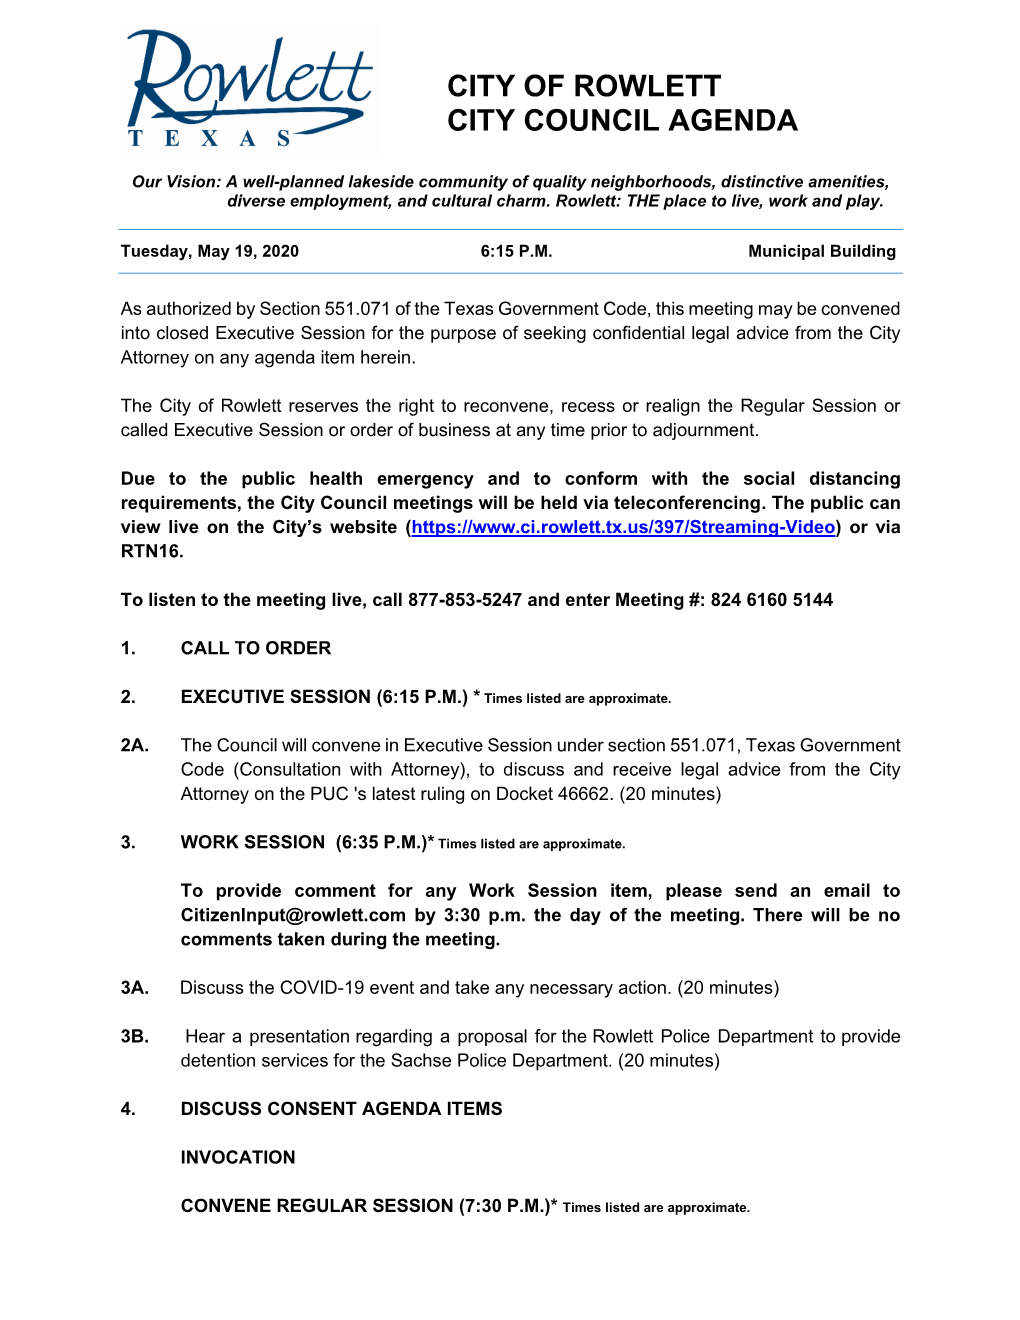 City of Rowlett City Council Agenda